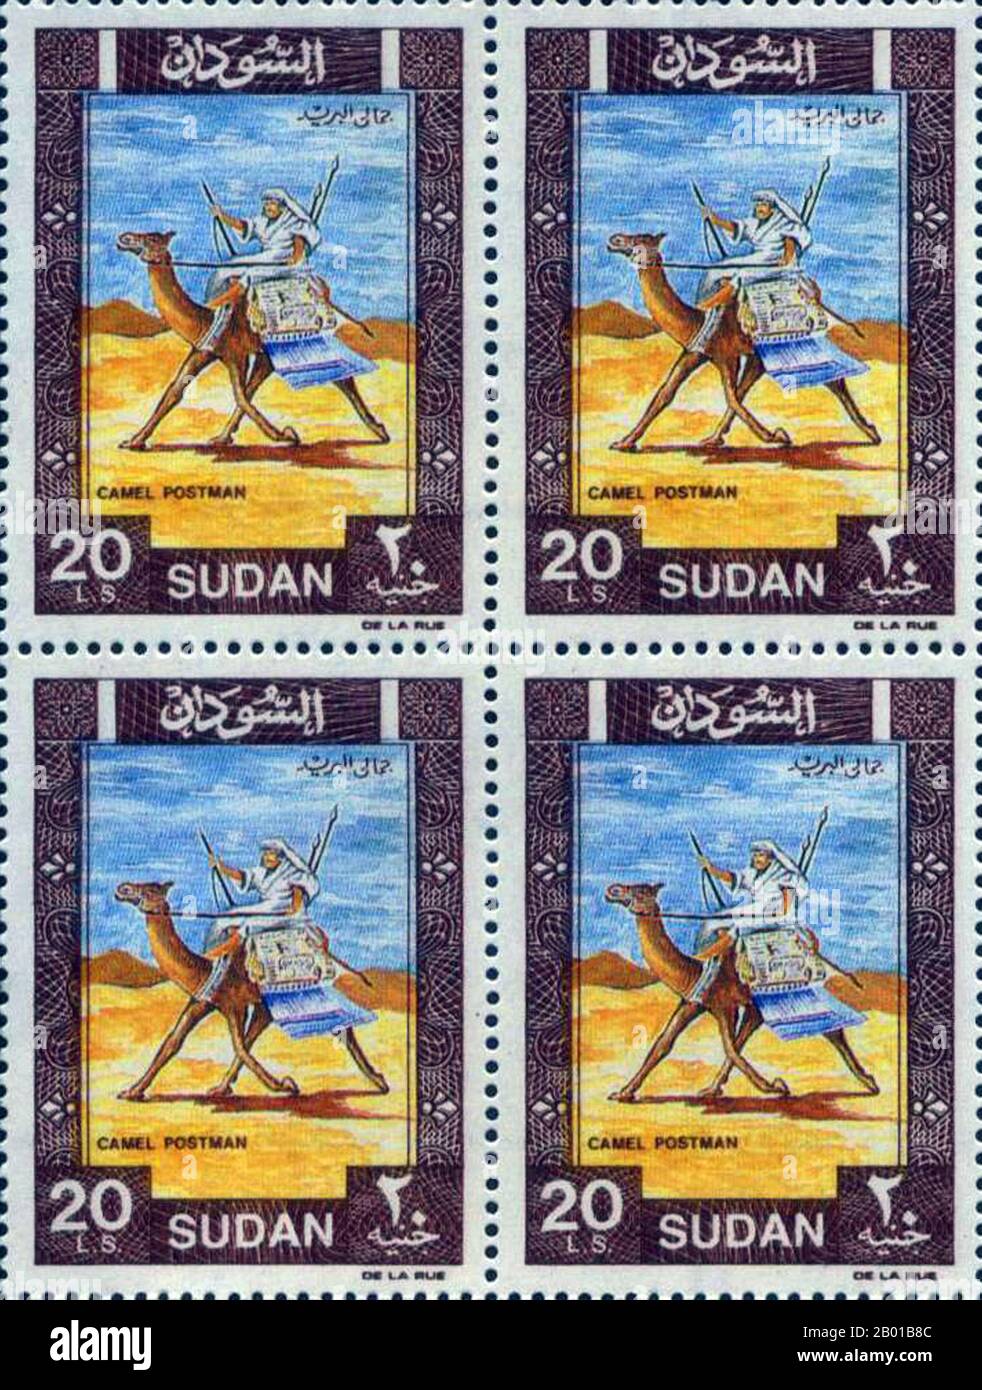 Sudan: Francobolli che mostrano un 'postino cammello', Sudan anglo-egiziano. Il termine Sudan anglo-egiziano si riferisce al periodo tra il 1891 e il 1956 in cui il Sudan è stato amministrato come condominio dell'Egitto e del Regno Unito. Il Sudan (che comprendeva il Sudan moderno e il Sudan del Sud) era de jure condiviso legalmente tra l’Egitto e l’Impero britannico, ma era di fatto controllato da quest’ultimo, con l’Egitto che in realtà godeva solo di un potere locale limitato, poiché l’Egitto stesso è caduto sotto la crescente influenza britannica. La rivoluzione egiziana del 1952 vide l'Egitto chiedere la fine del condominio e l'indipendenza del Sudan Foto Stock